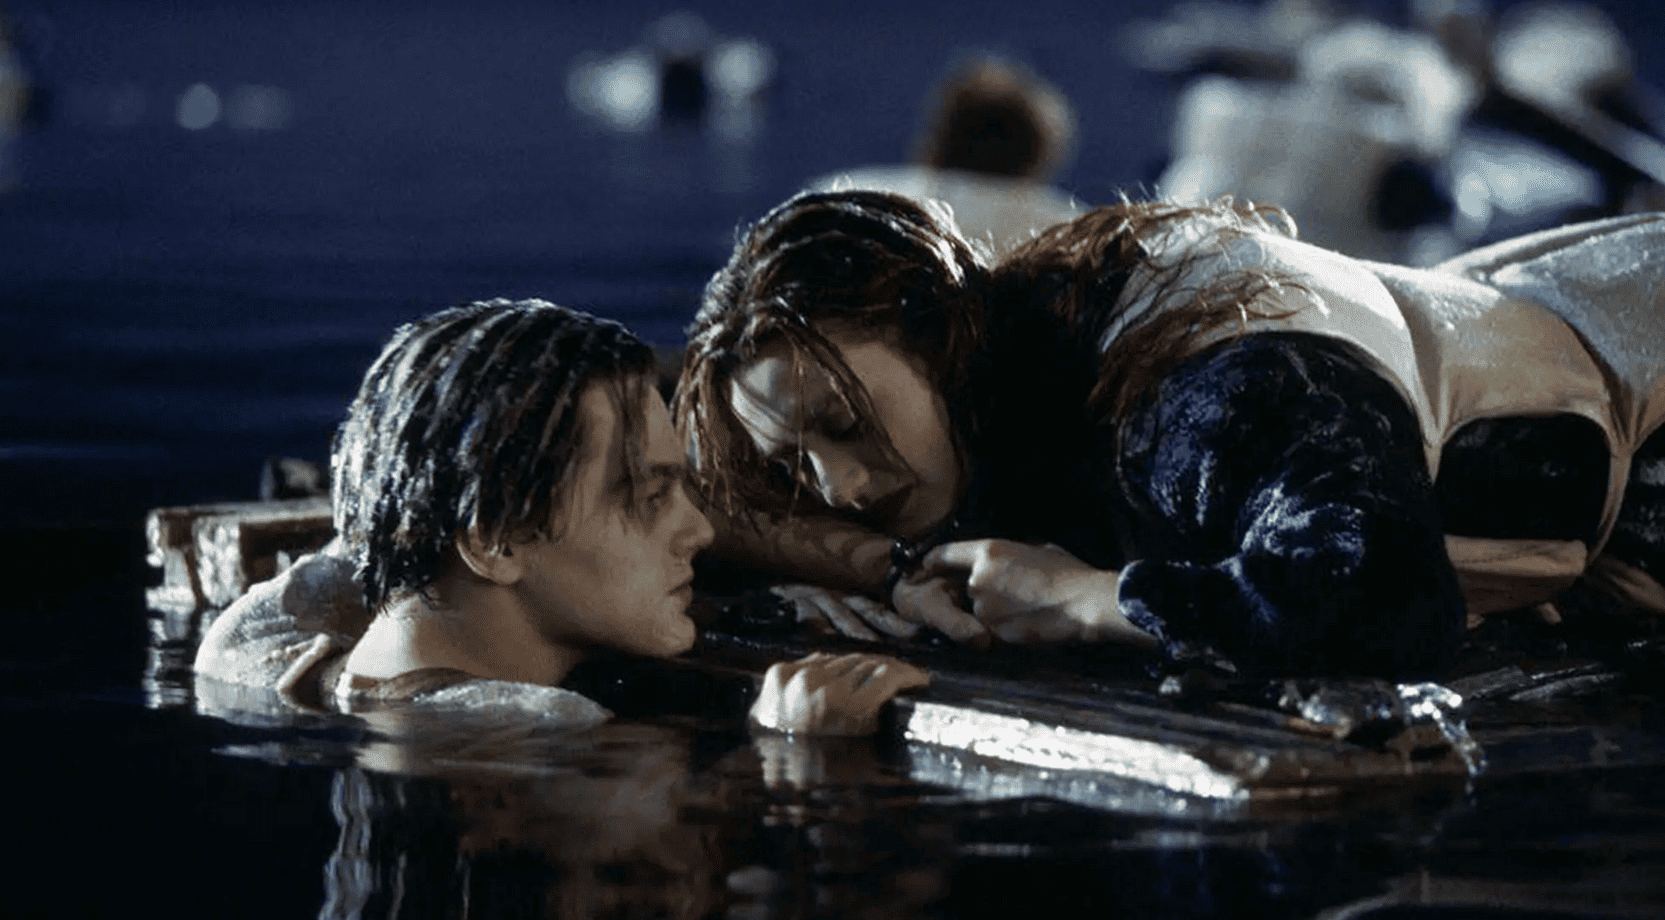 El trozo de madera de la escena final de “Titanic” se vende en subasta por US$ 718,750